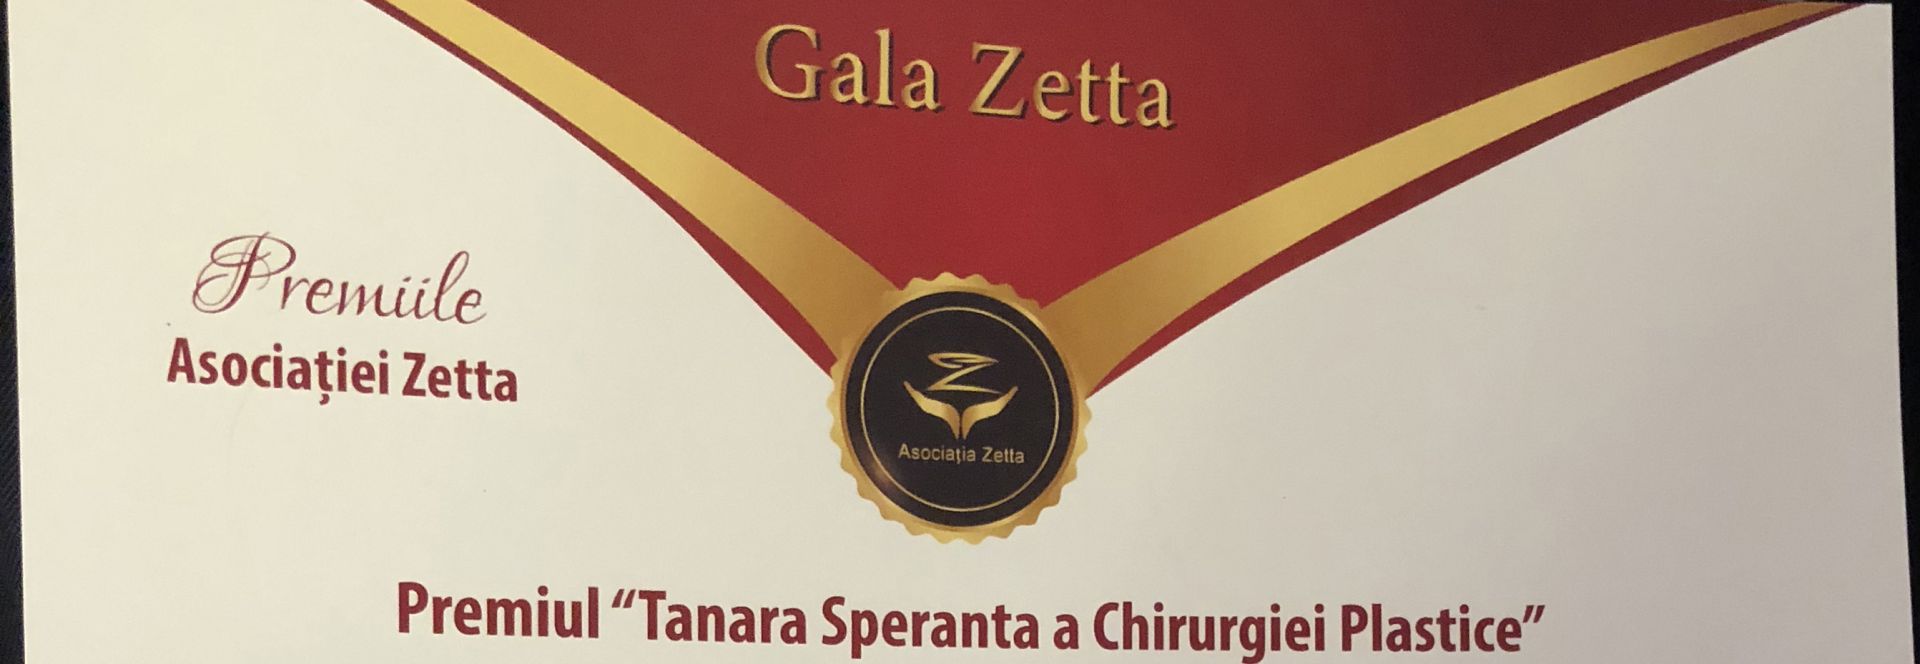 Gala Zetta